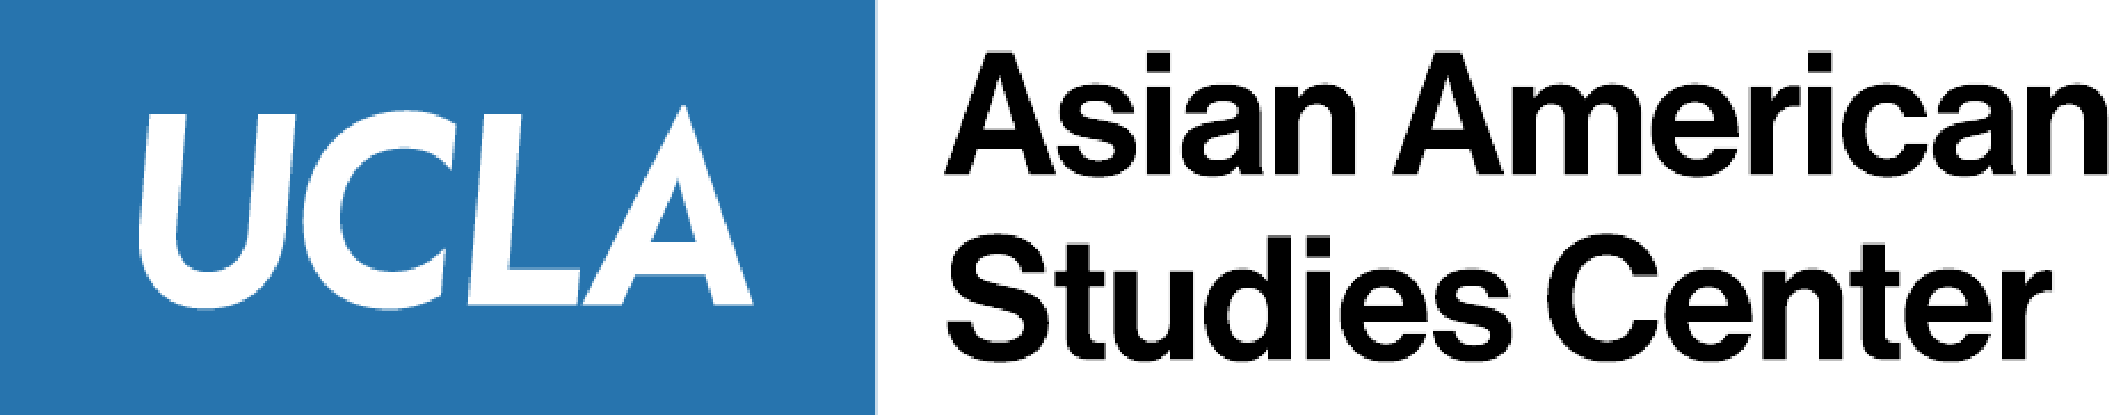 Logo for UCLA Asian American Studies Center